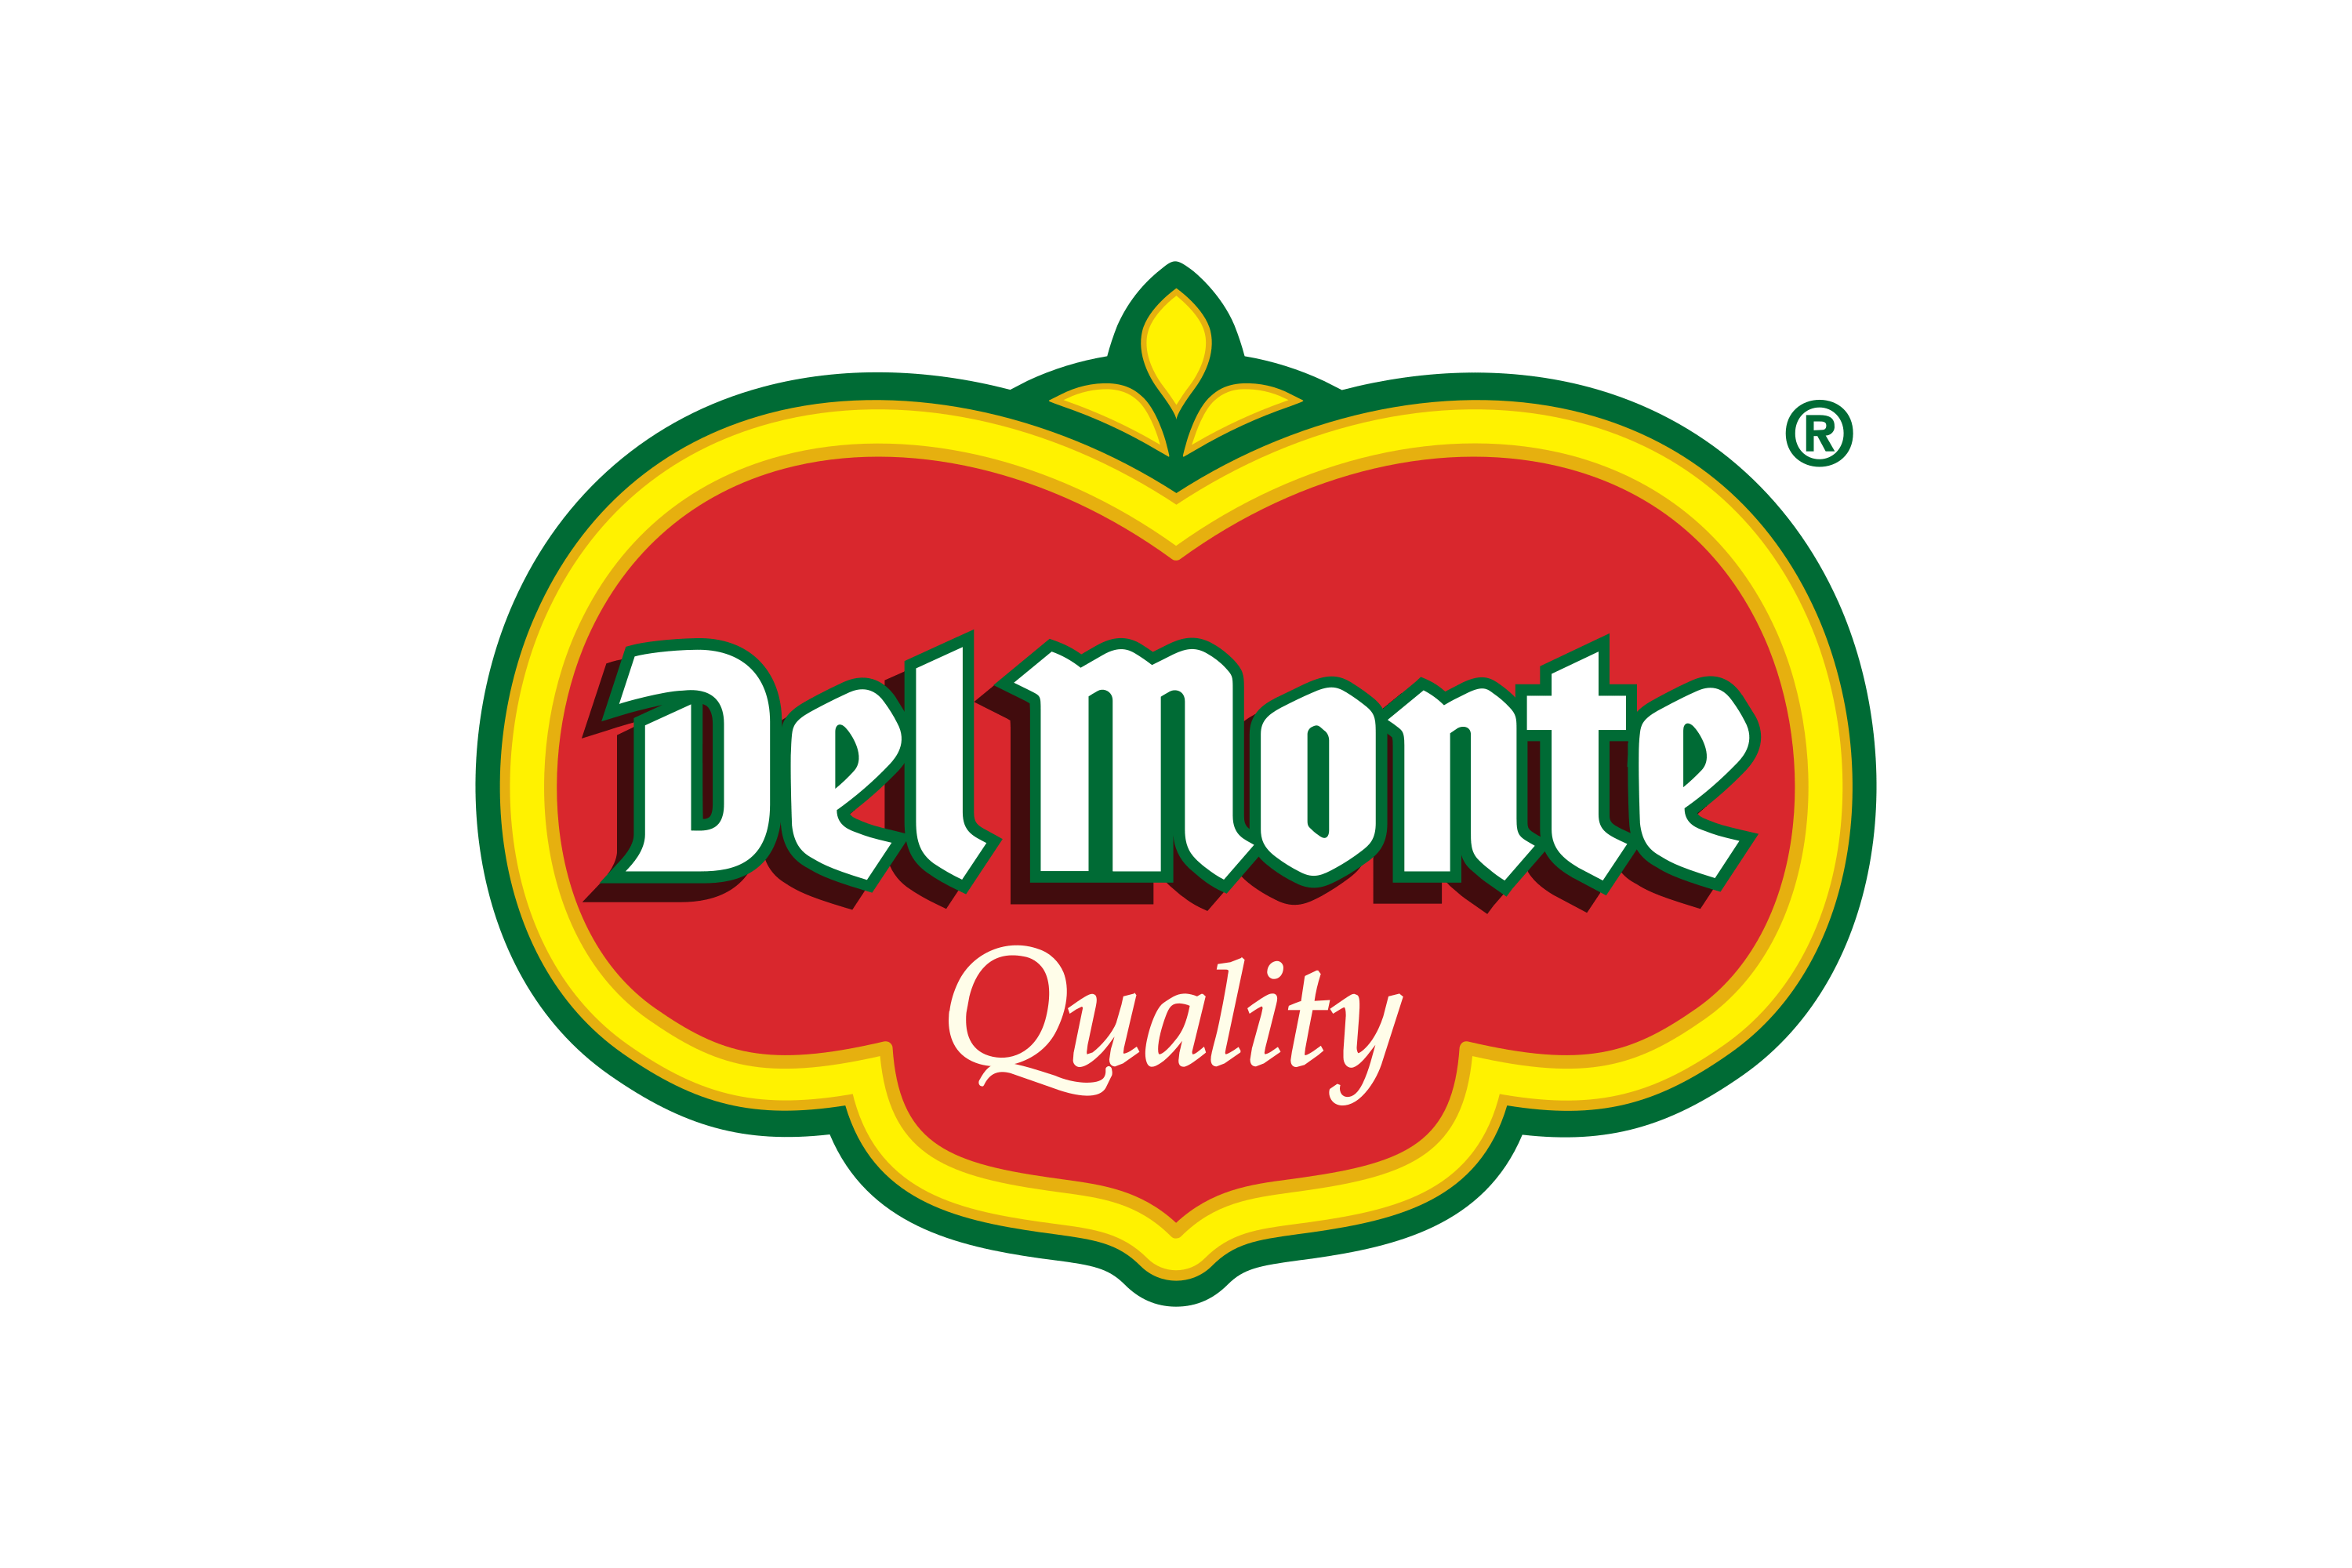 Download Del Monte Foods Logo in SVG Vector or PNG File Format - Logo.wine